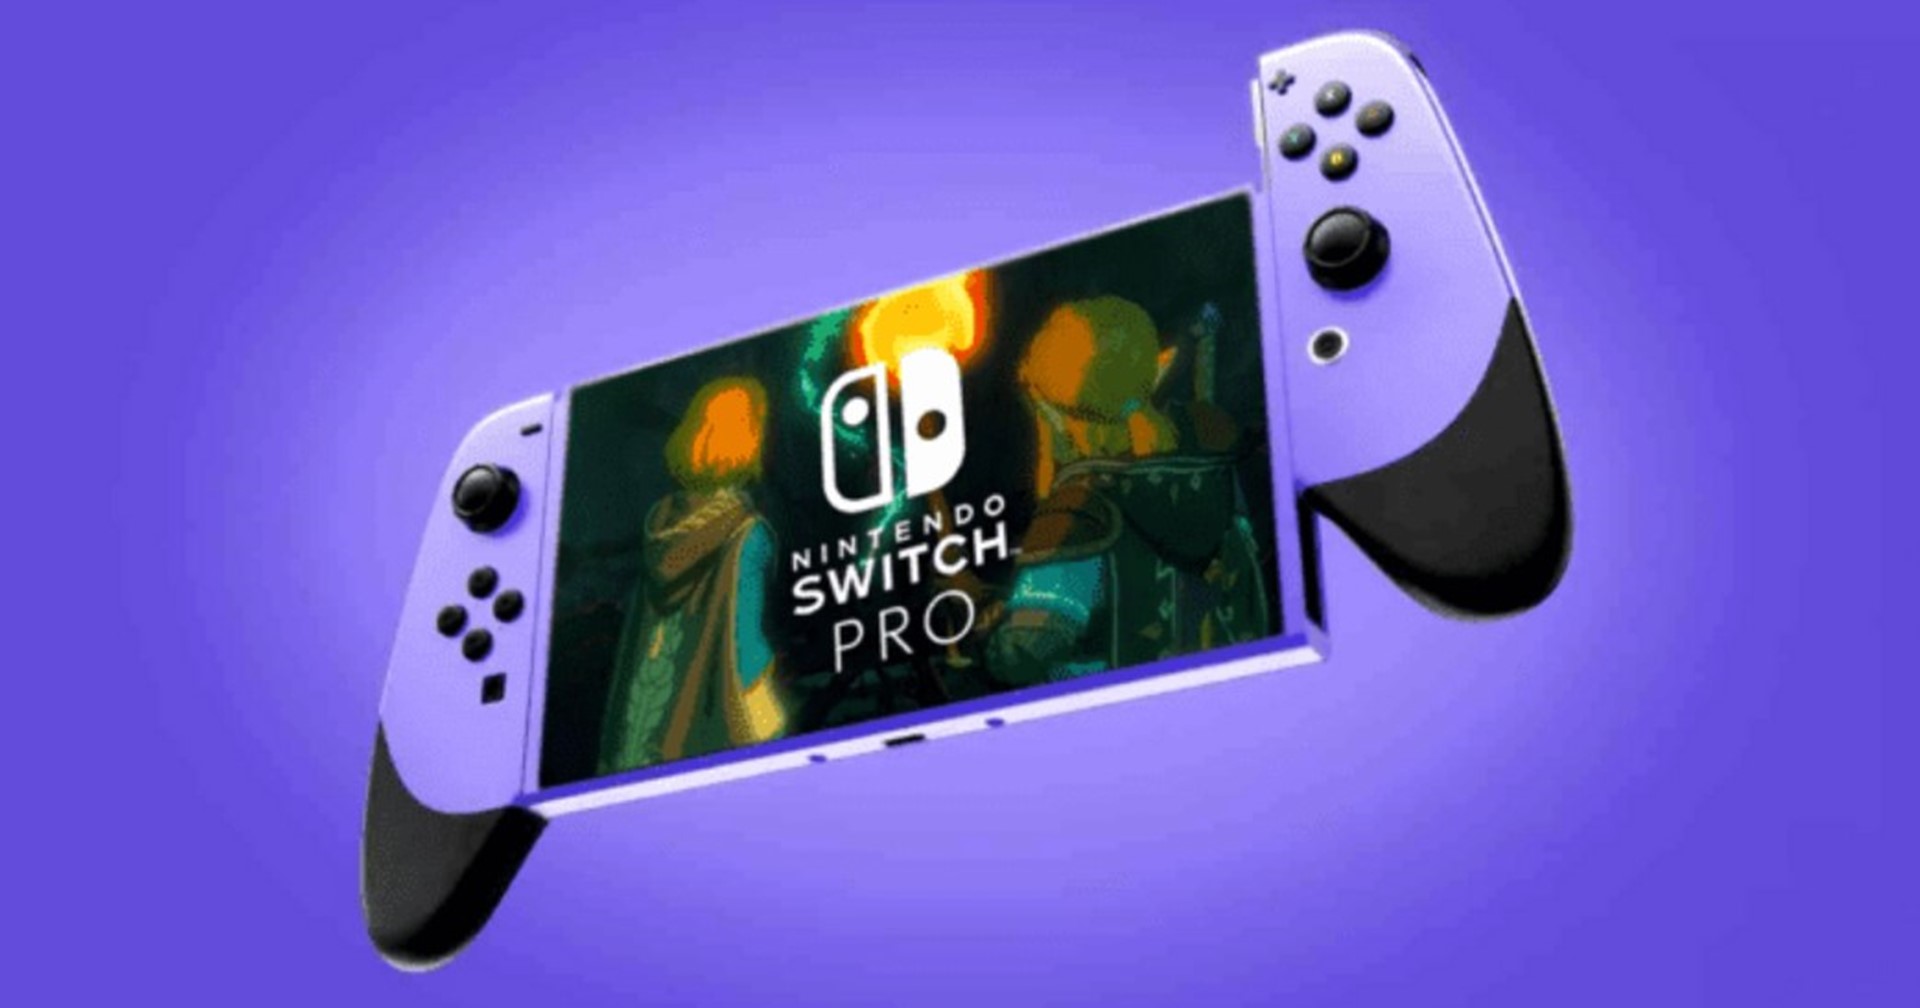 [ข่าวลือ] พบข้อมูล Nintendo Switch Pro จะเปิดตัวปลายปี 2023